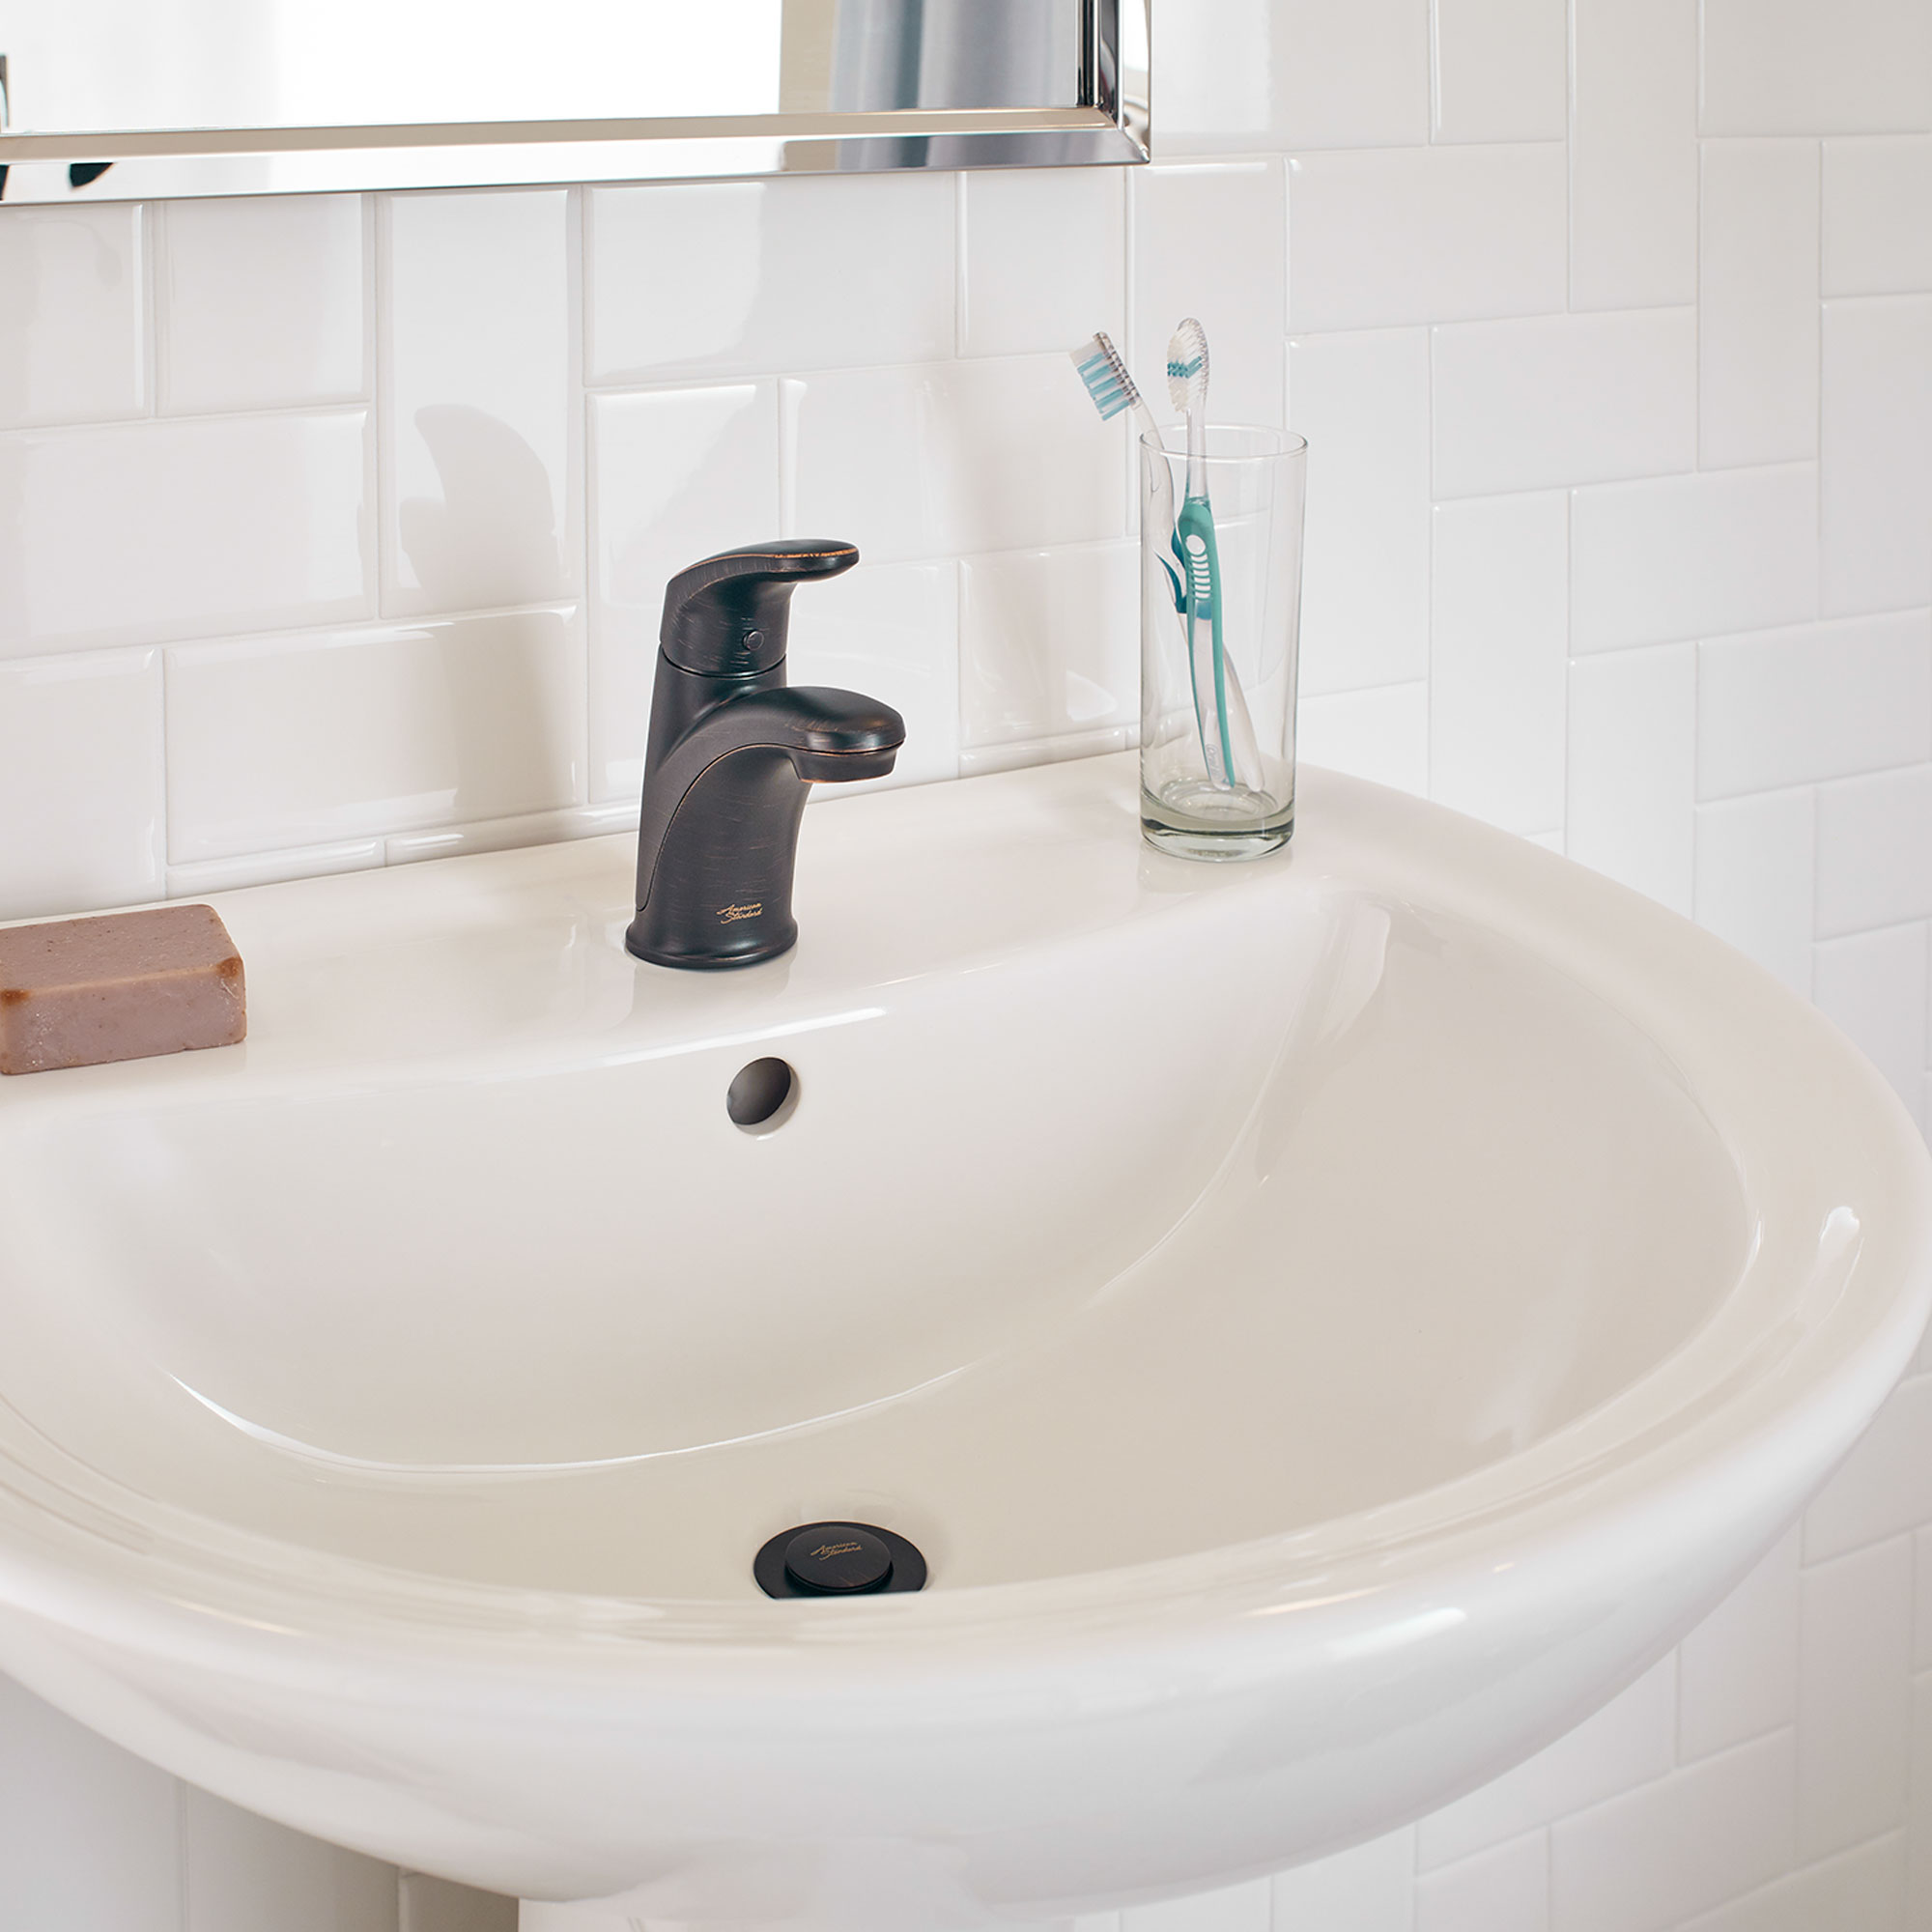 ColonyMC PRO - Robinet de salle de bain monotrou à poignée unique 1,2 gpm/4,5 L/min avec poignée à levier